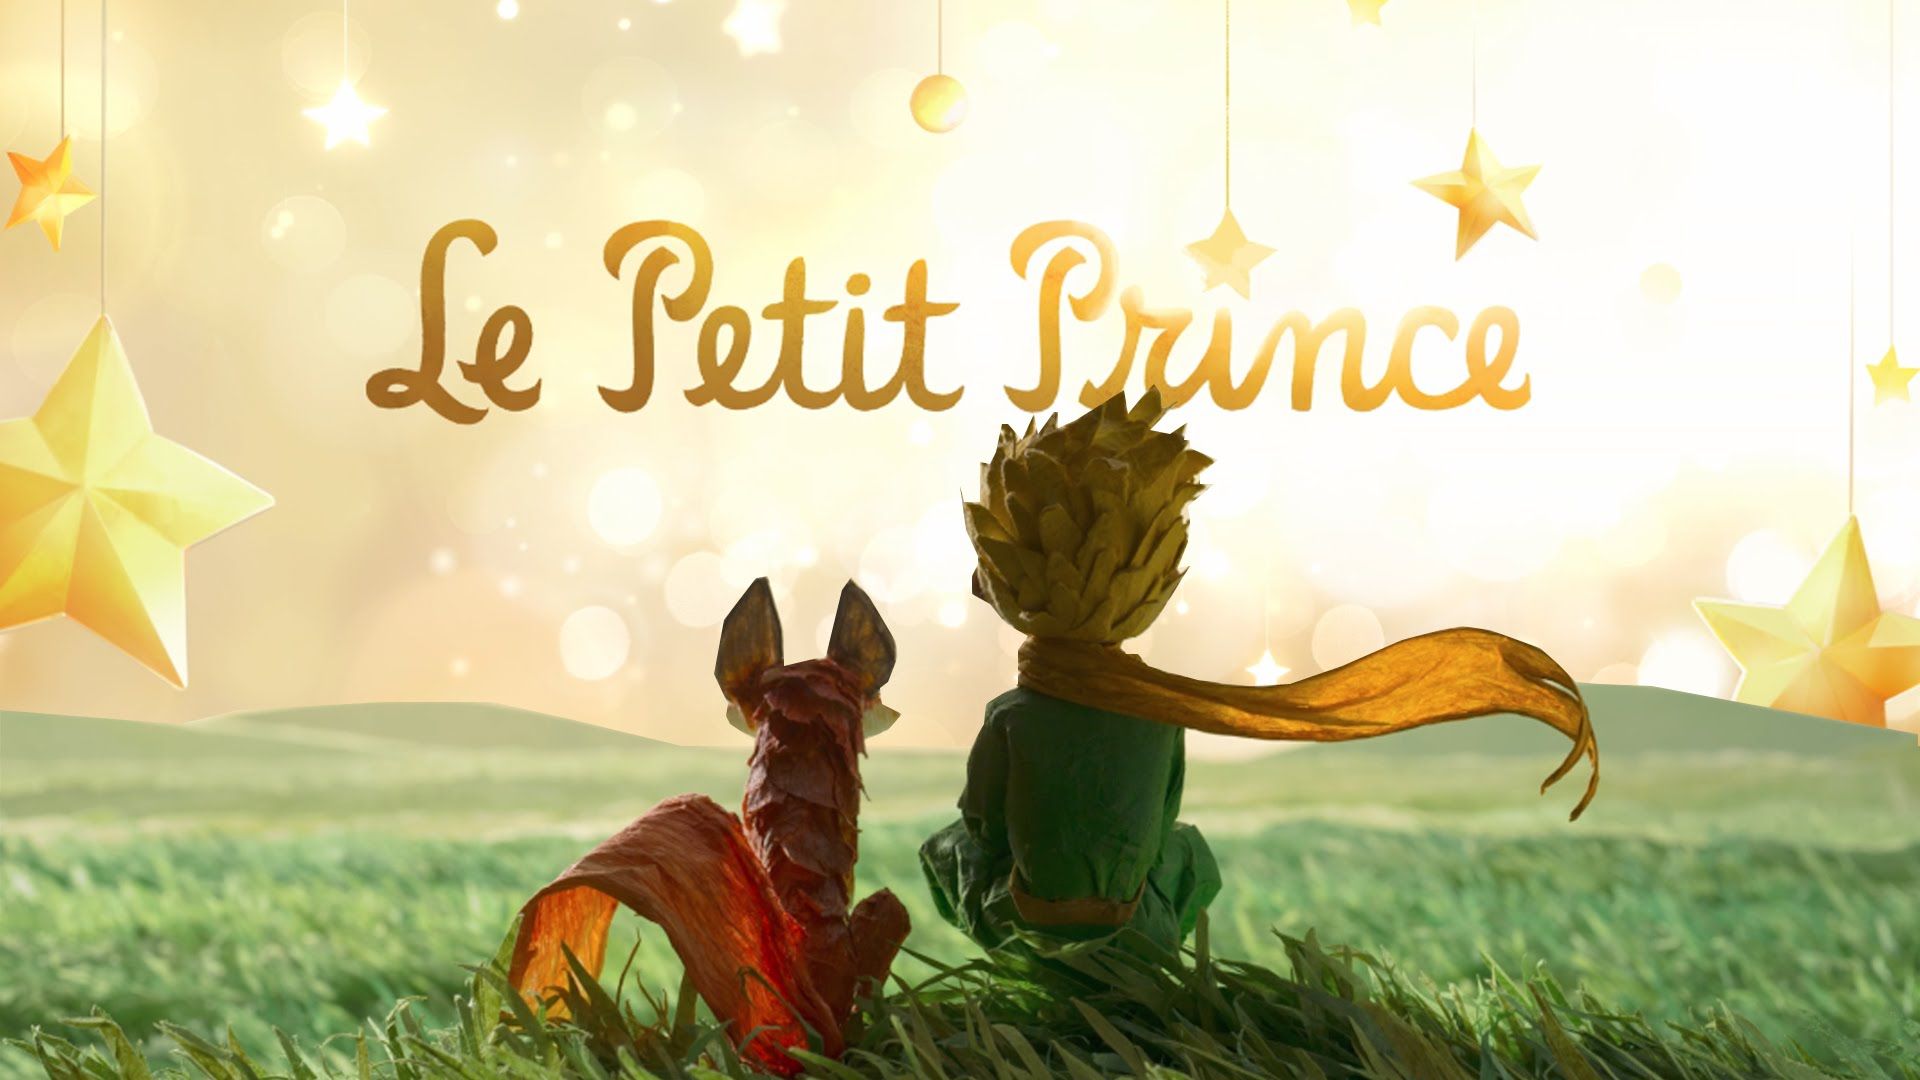 خلاصه داستان شاهزاده کوچولو به انگلیسی
